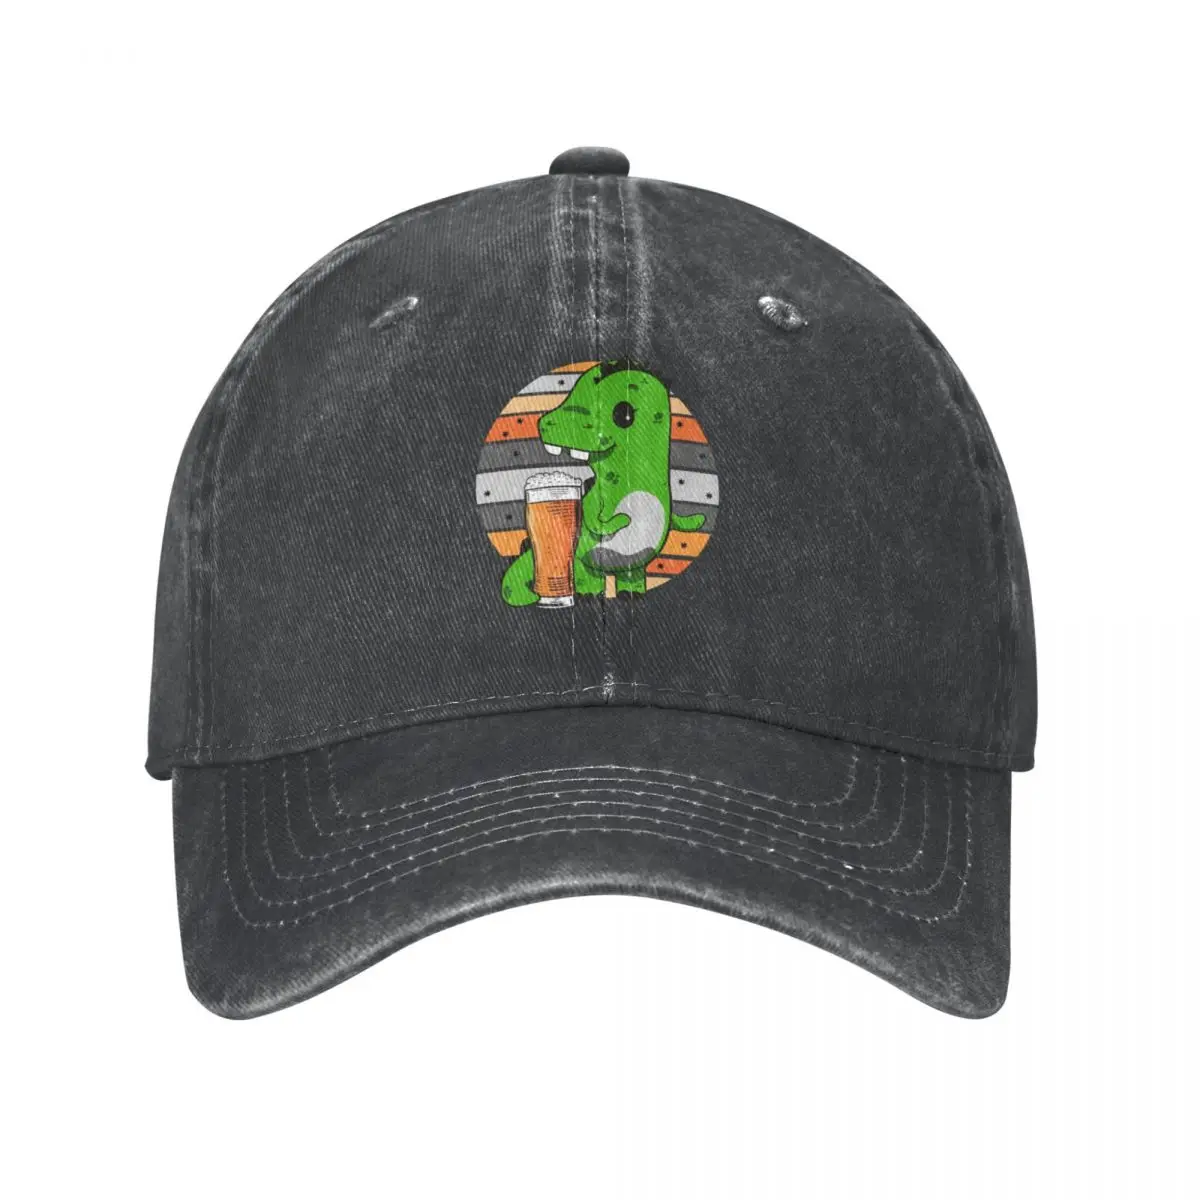 Beer Loving Dinosaur SaurusCap Cowboy Hat streetwear luxury woman cap Men's